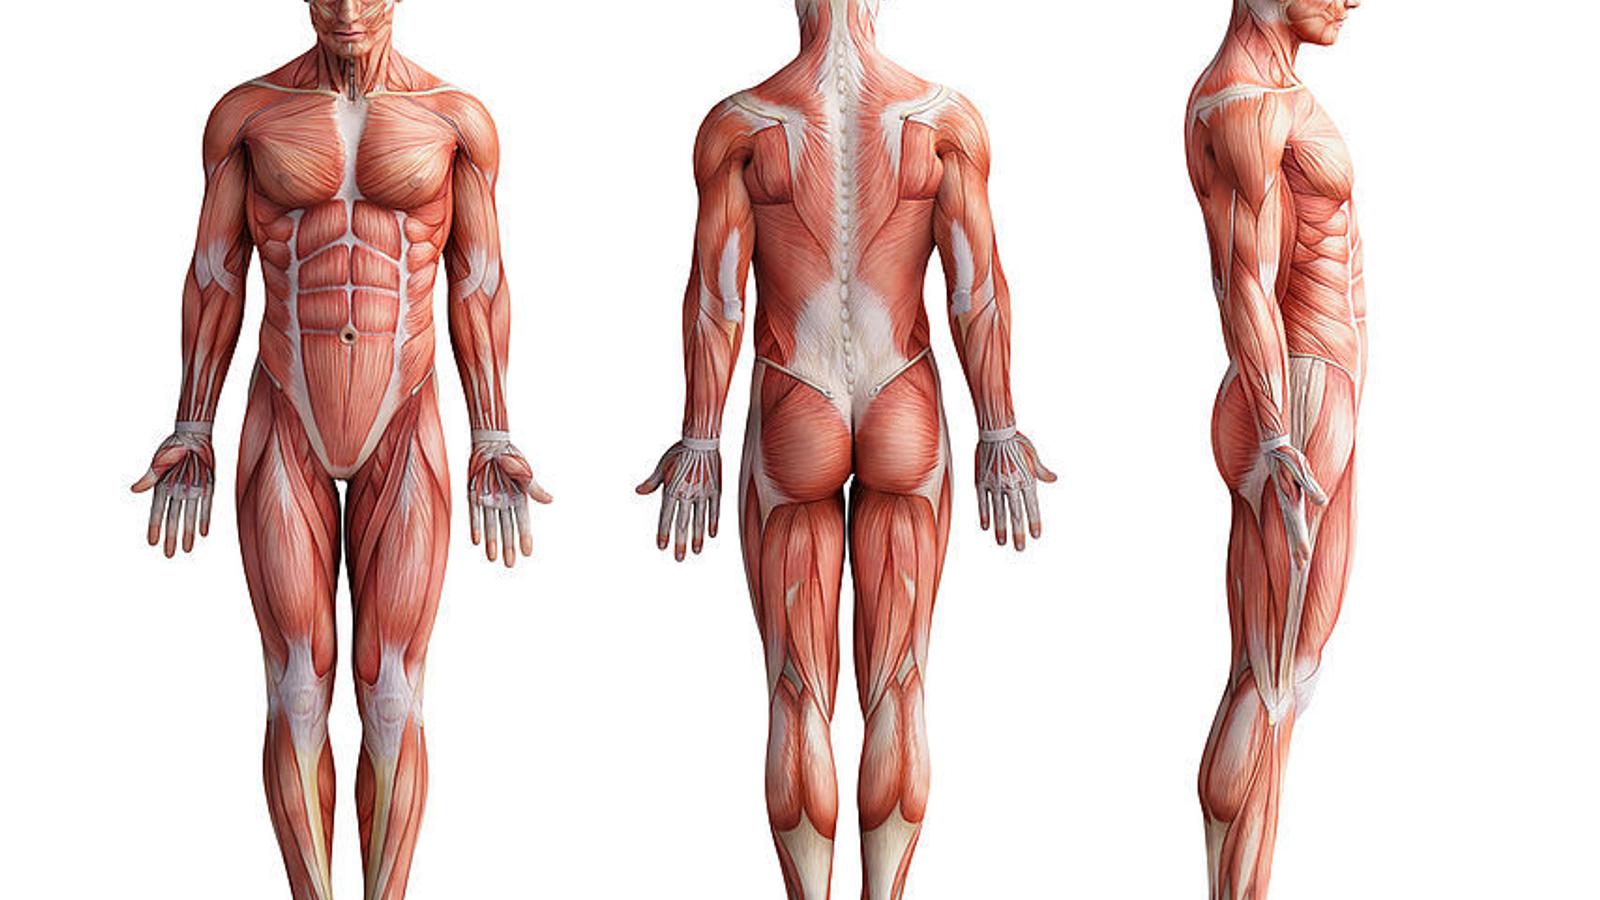 Anatomie des menschlichen Muskelsystems mit Sehnen